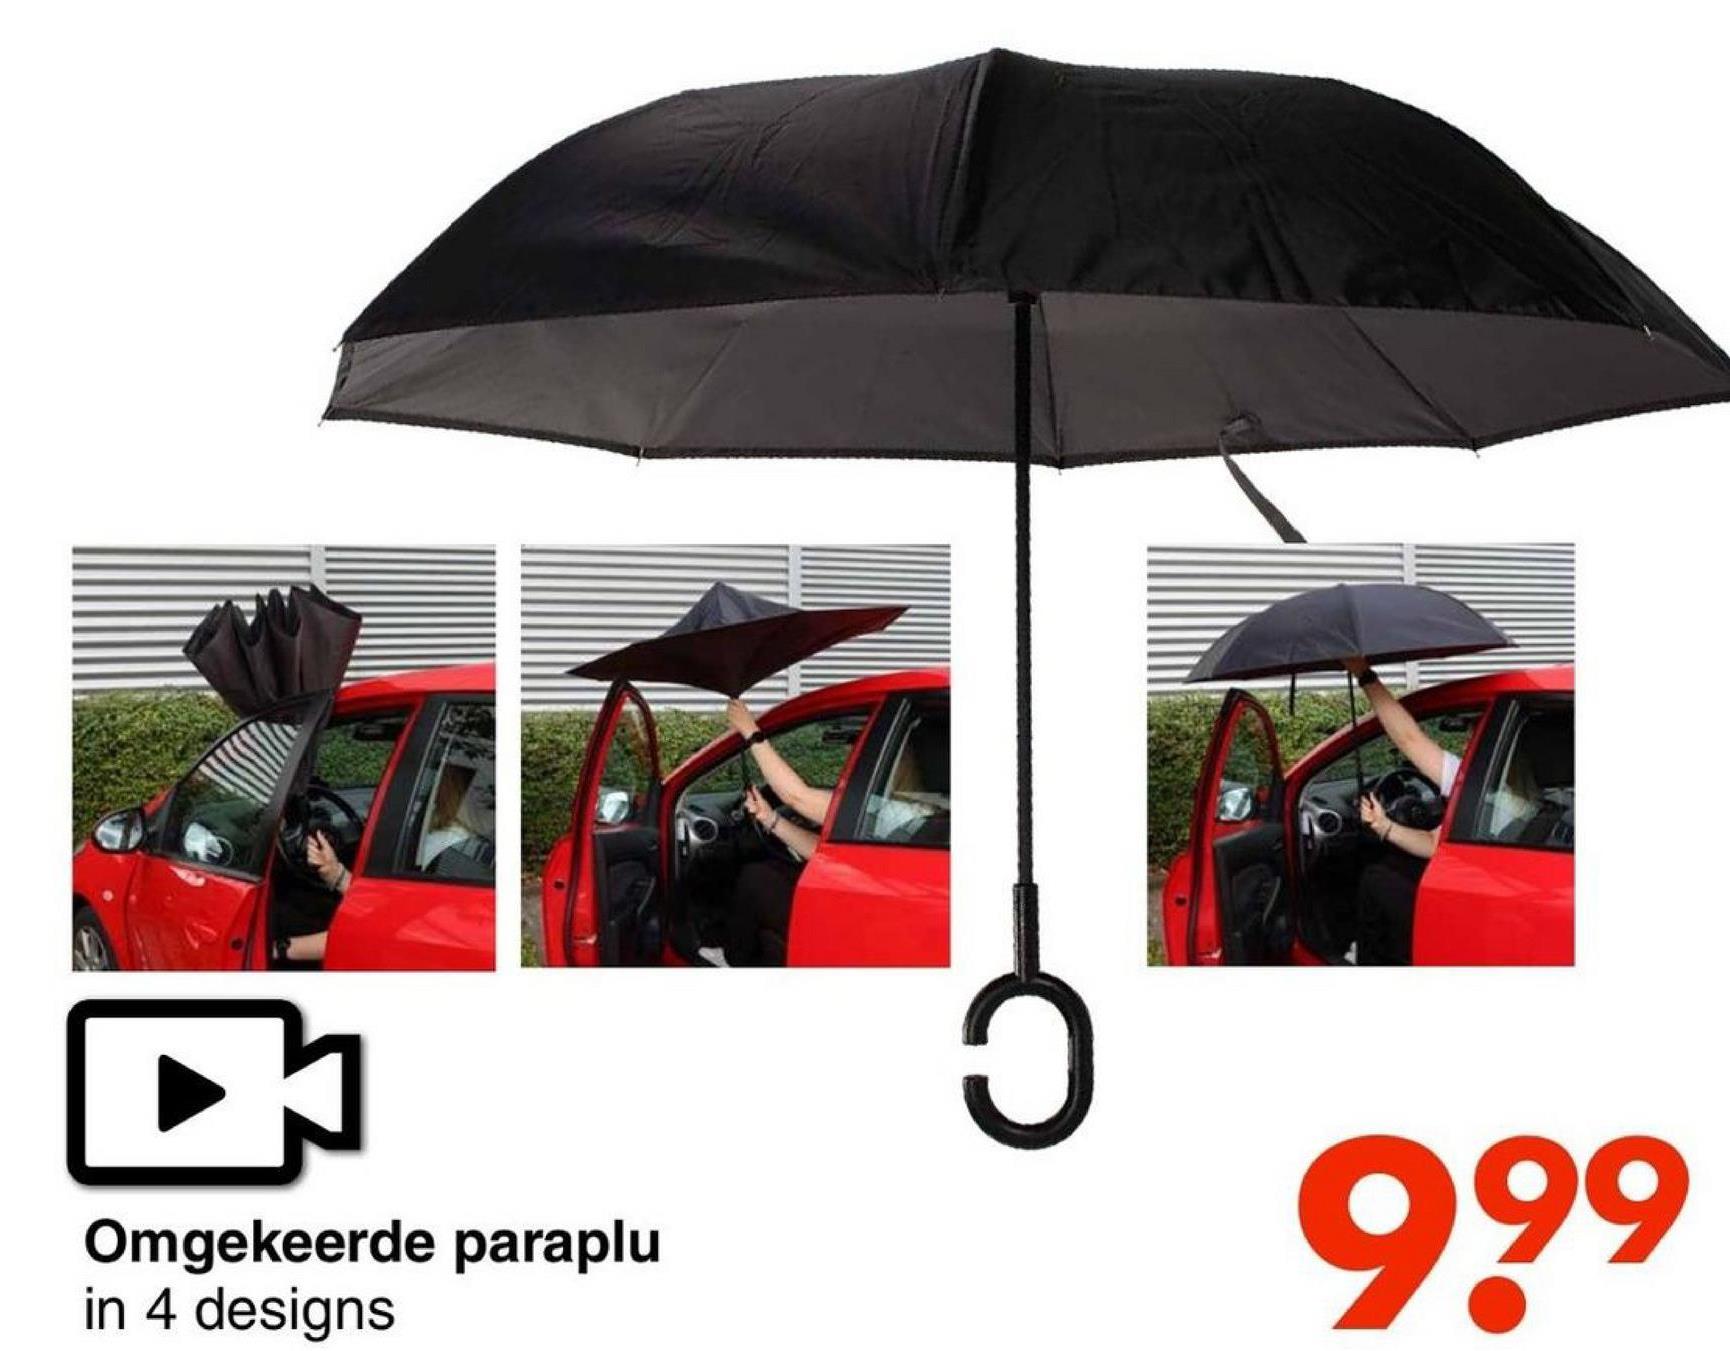 Omgekeerde paraplu
in 4 designs
999